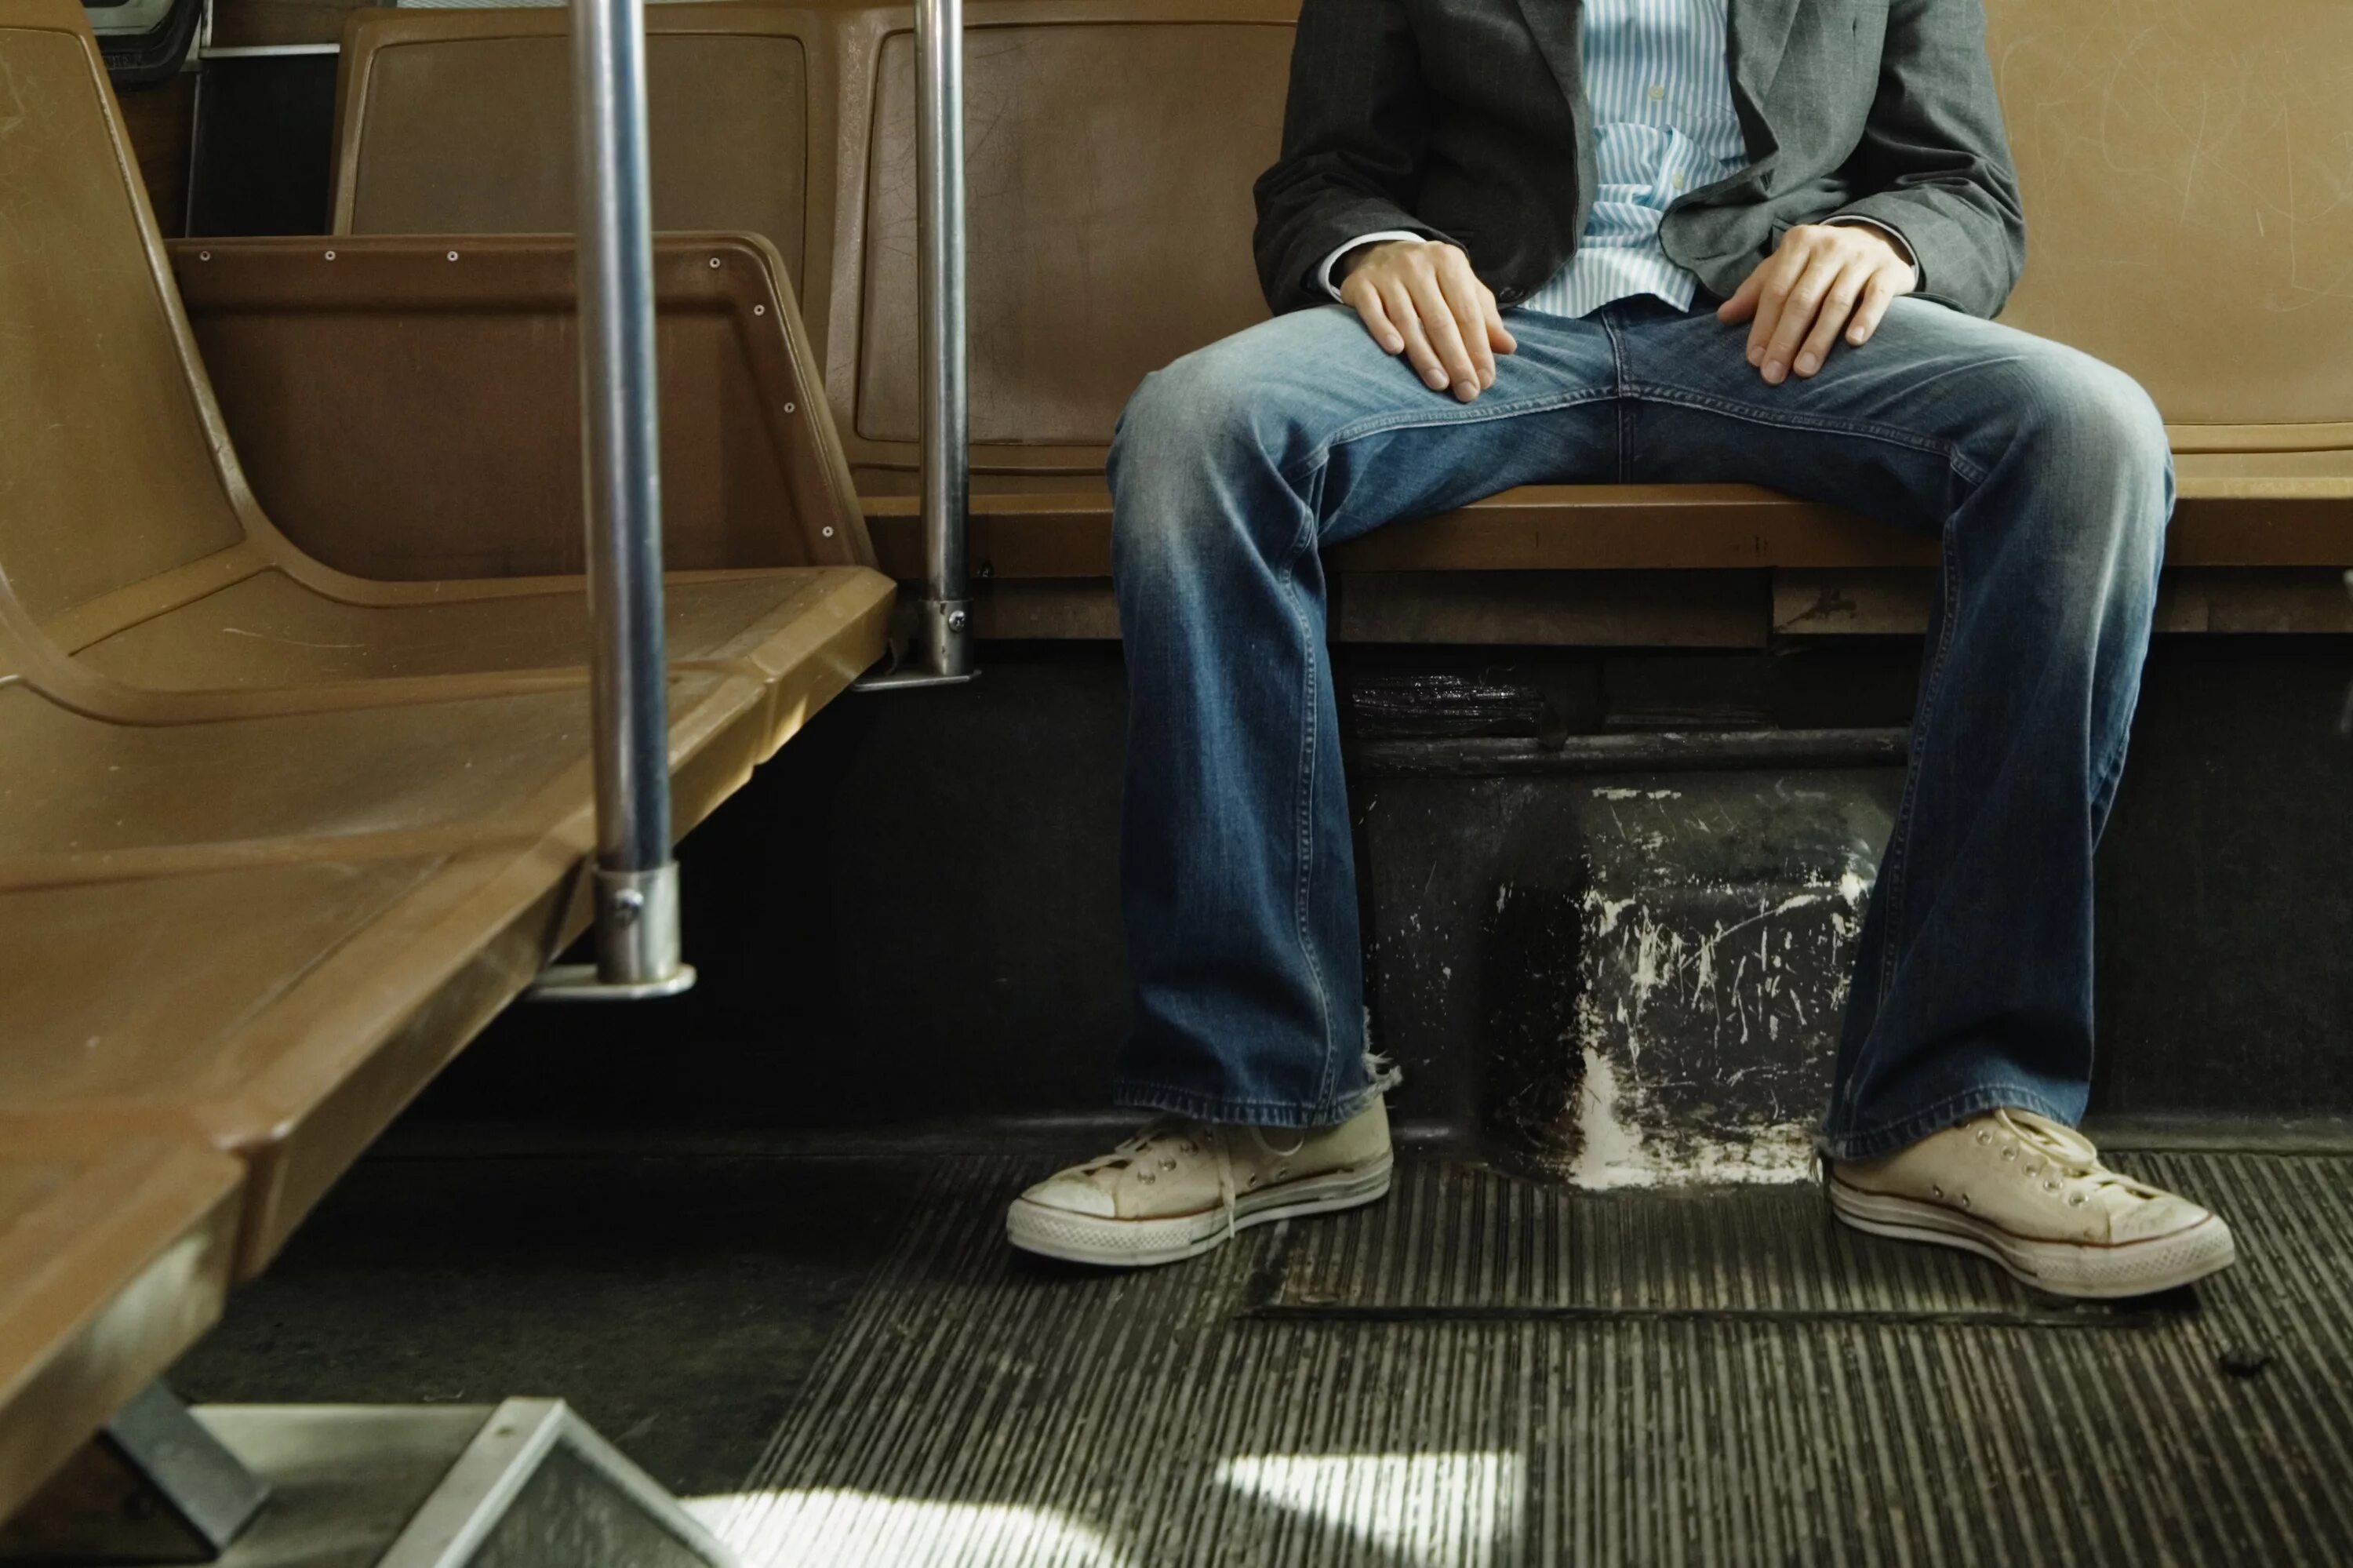 Мэнспрединг manspreading. Мэнспрединг в Нью-Йорке. Мужчина сидит с расставленными ногами. Сидит широко расставив ноги.